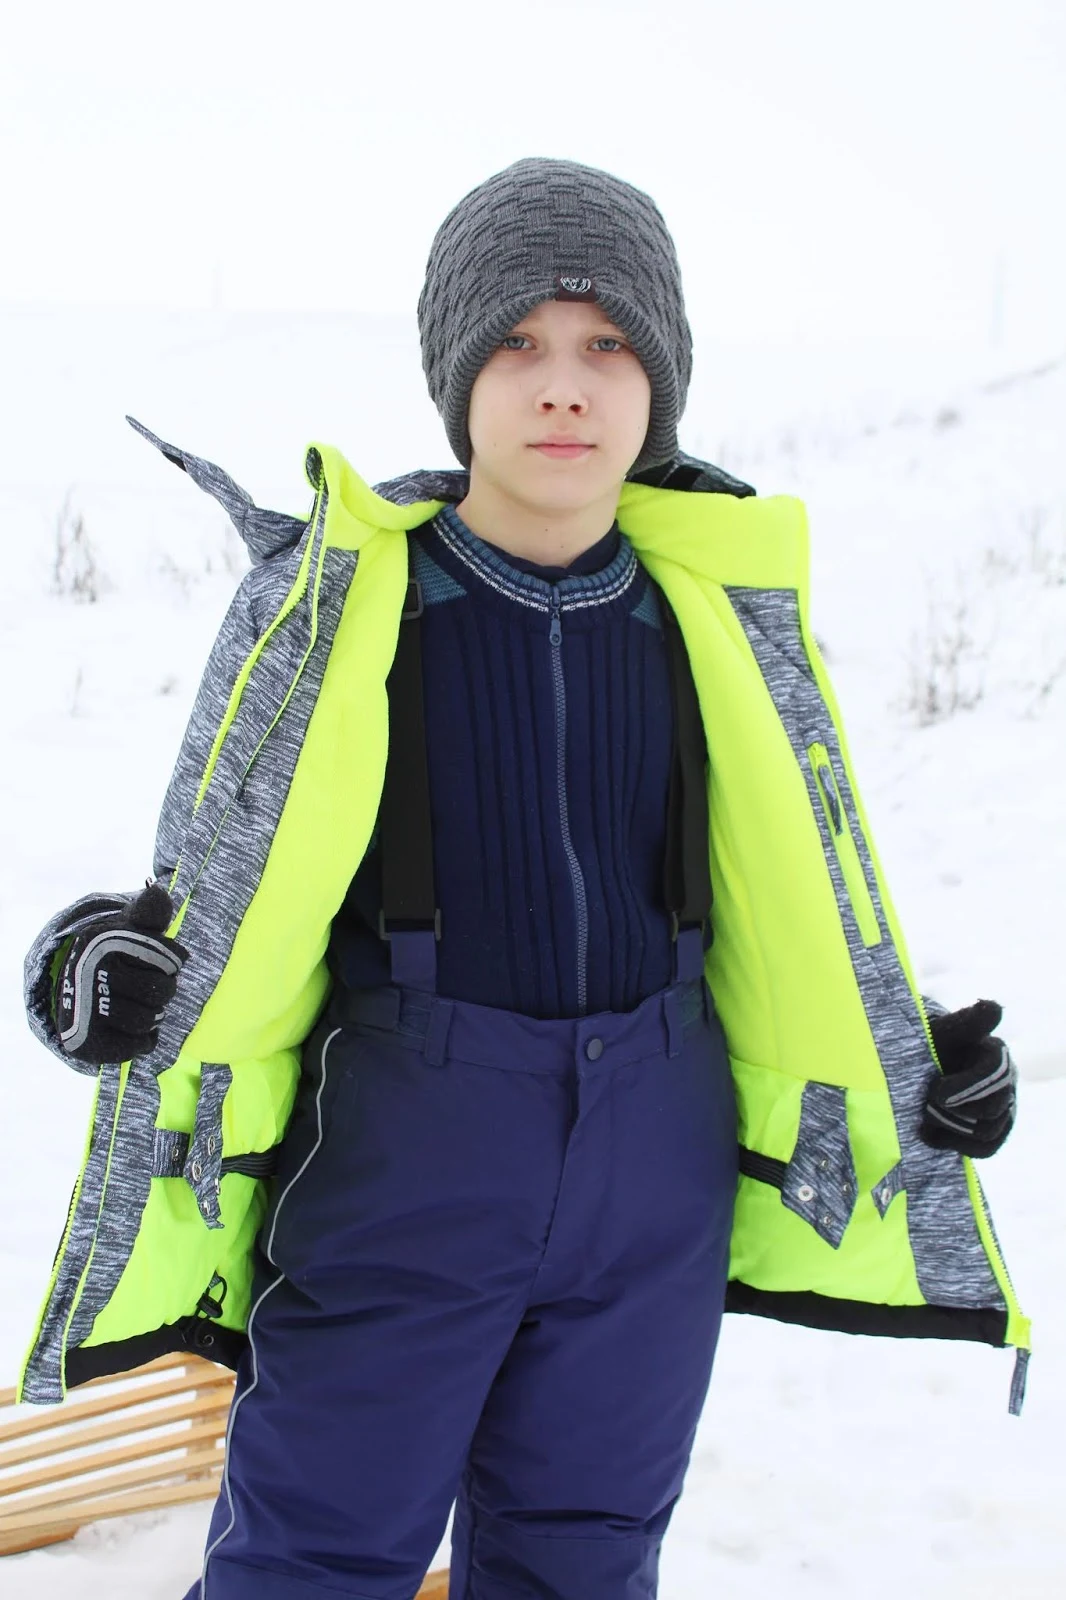 kurtka outdoorowa z kieszonką na rękawie dla aktywnego chłopca i spodnie outdoorowe z odblaskowymi lampasami dla aktywnego chłopca Lemon Explore